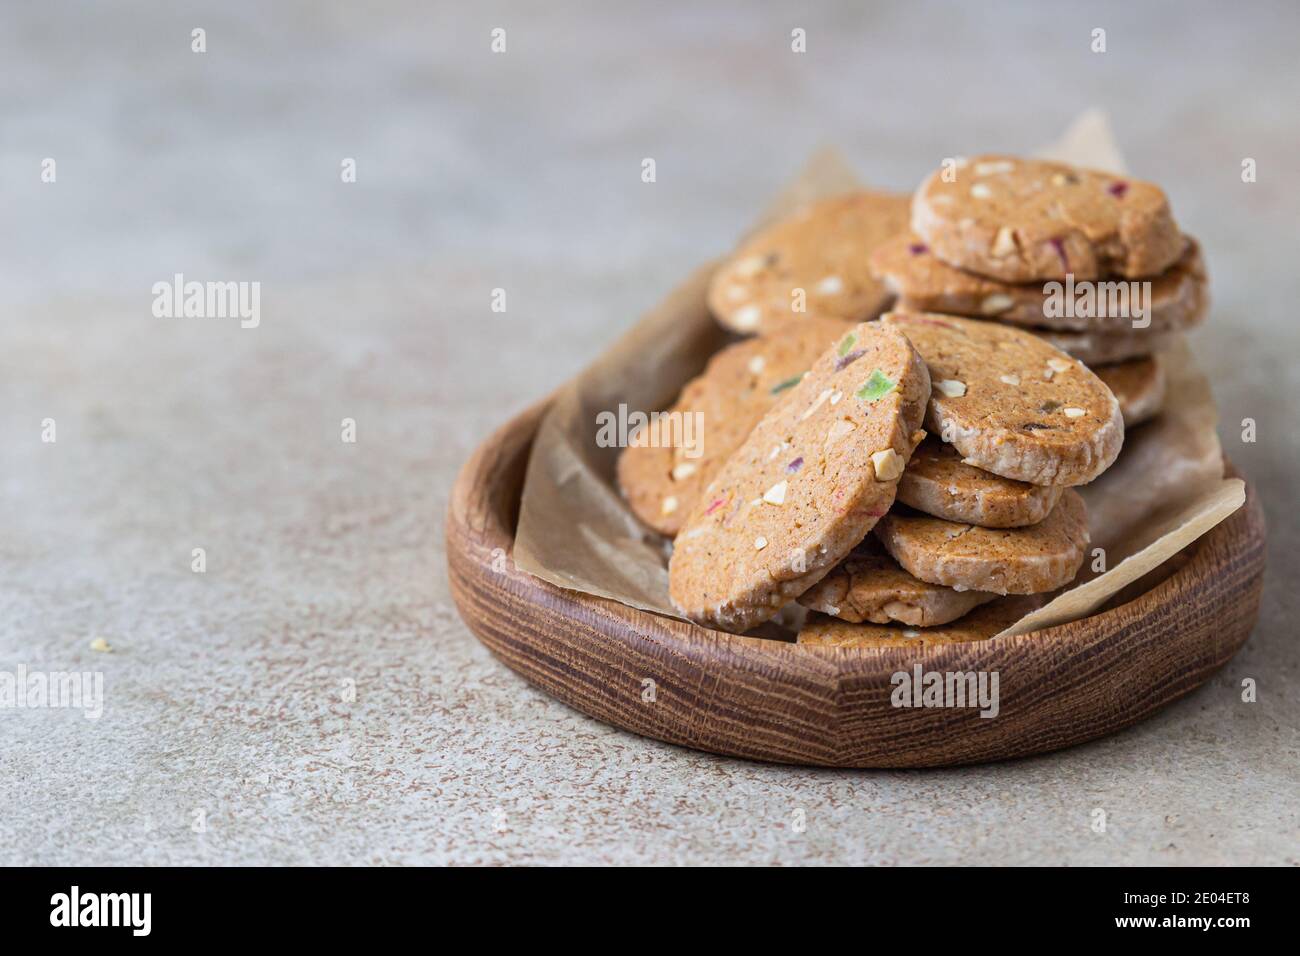 Biscuits au beurre épicé danois aux fruits confits, fond en béton léger. Mise au point sélective. Banque D'Images